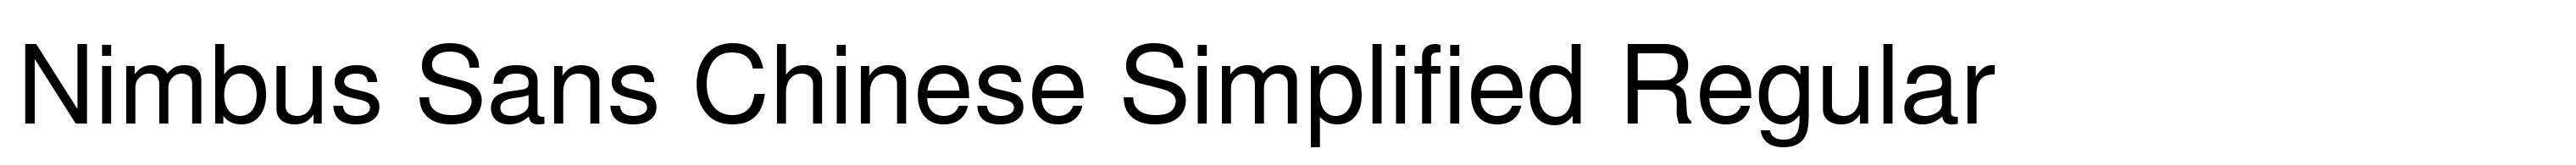 Nimbus Sans Chinese Simplified Regular